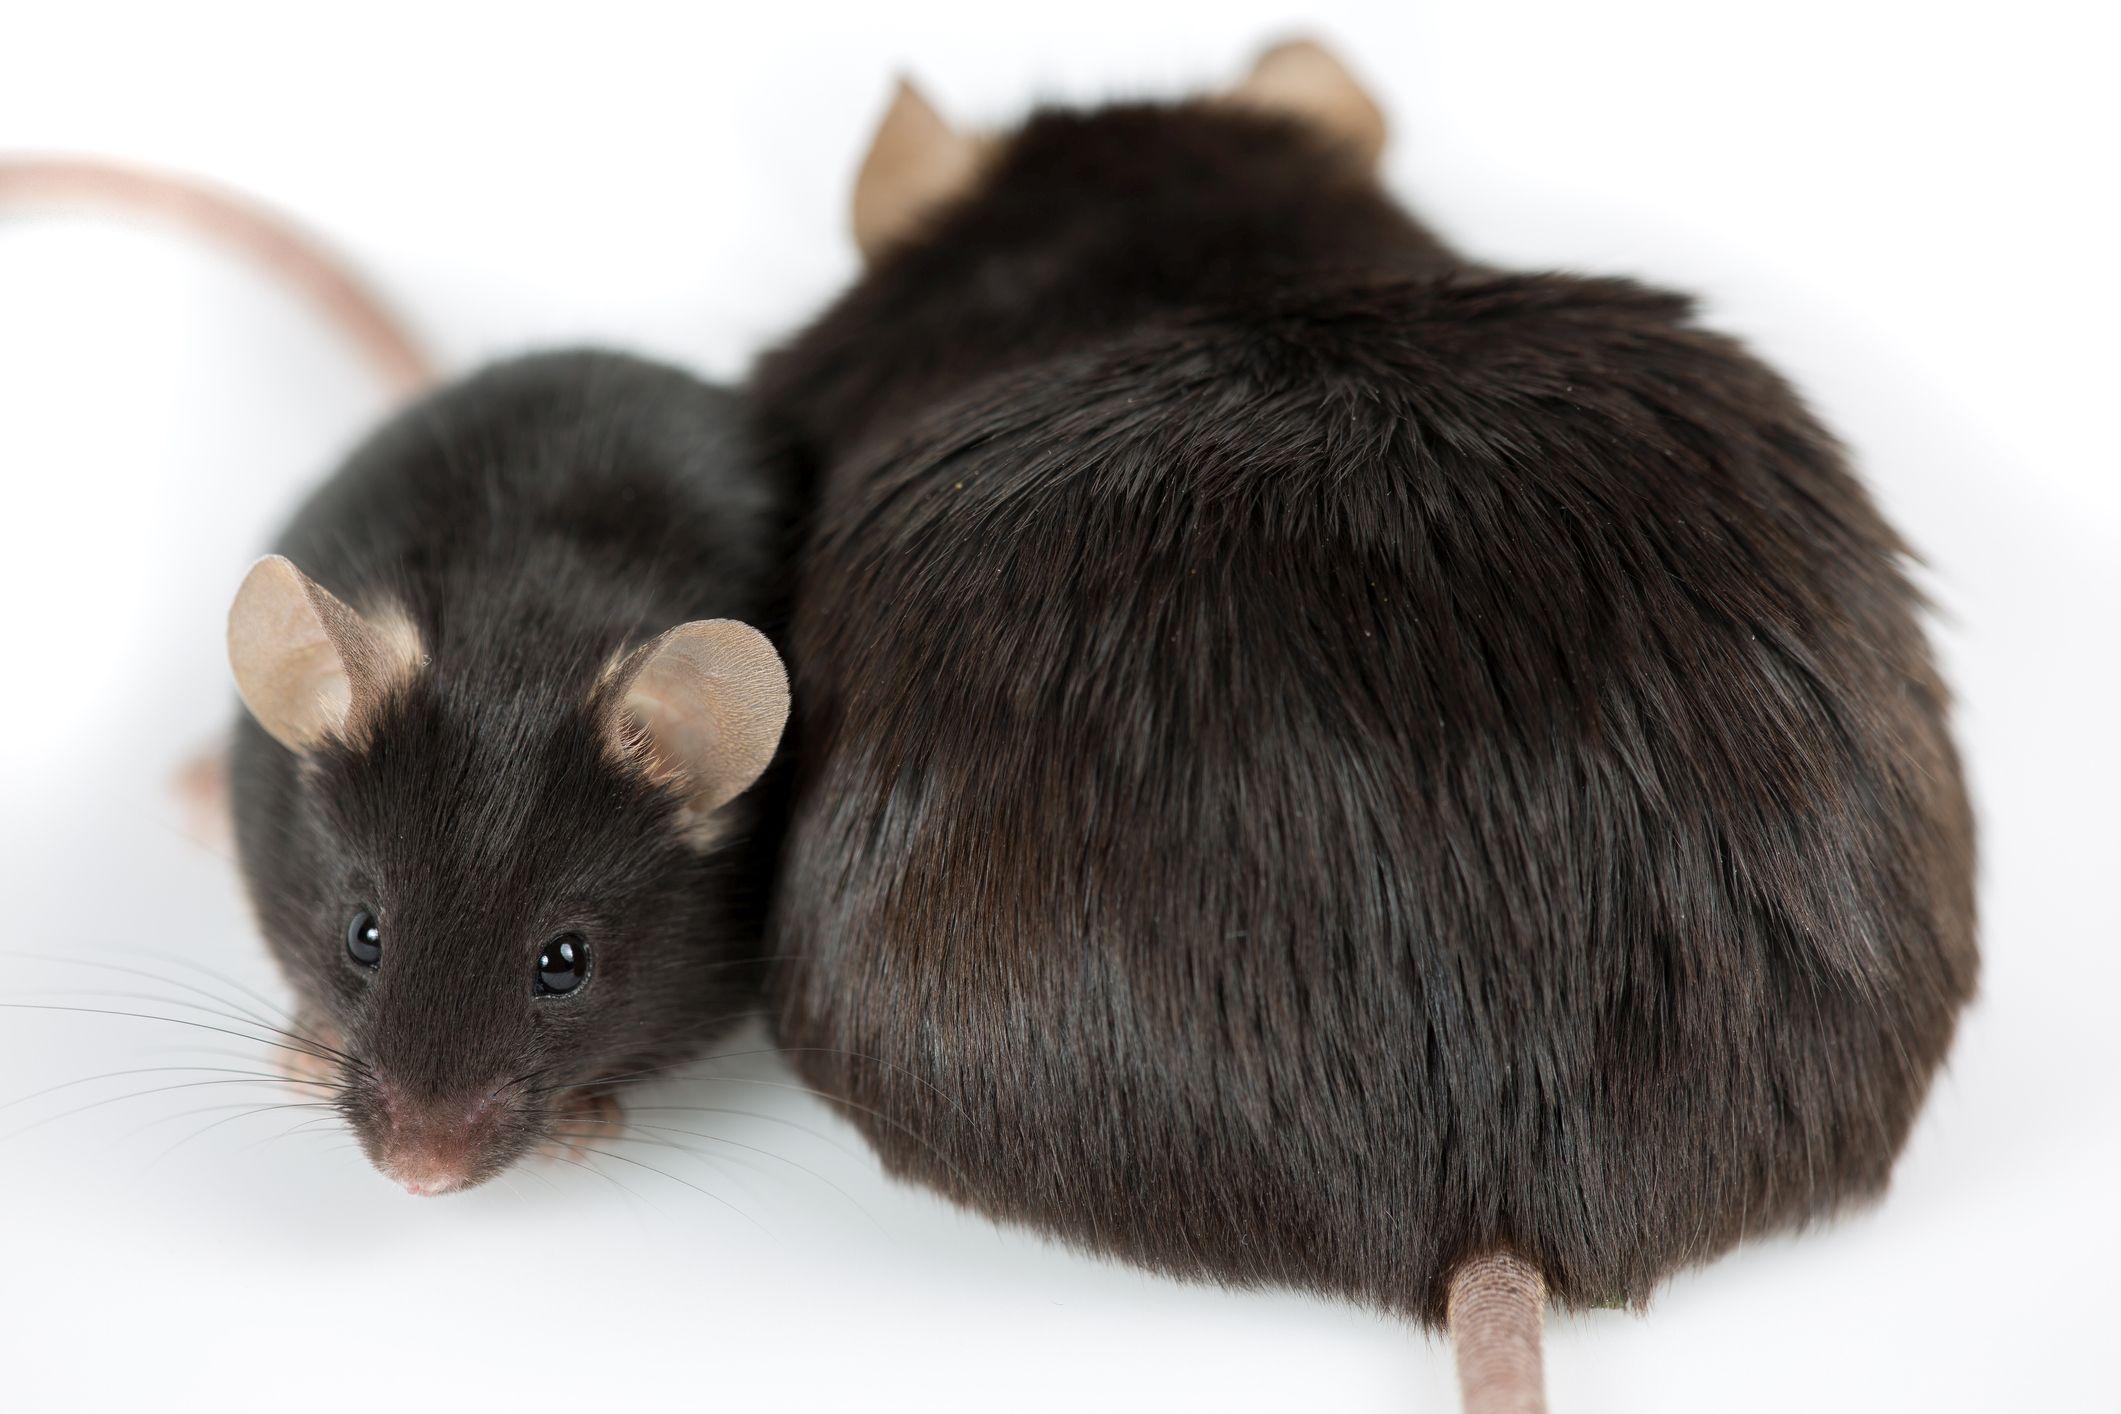 durch Junk Food induzierte fettleibige Maus im Vergleich zu normaler Kontrolle